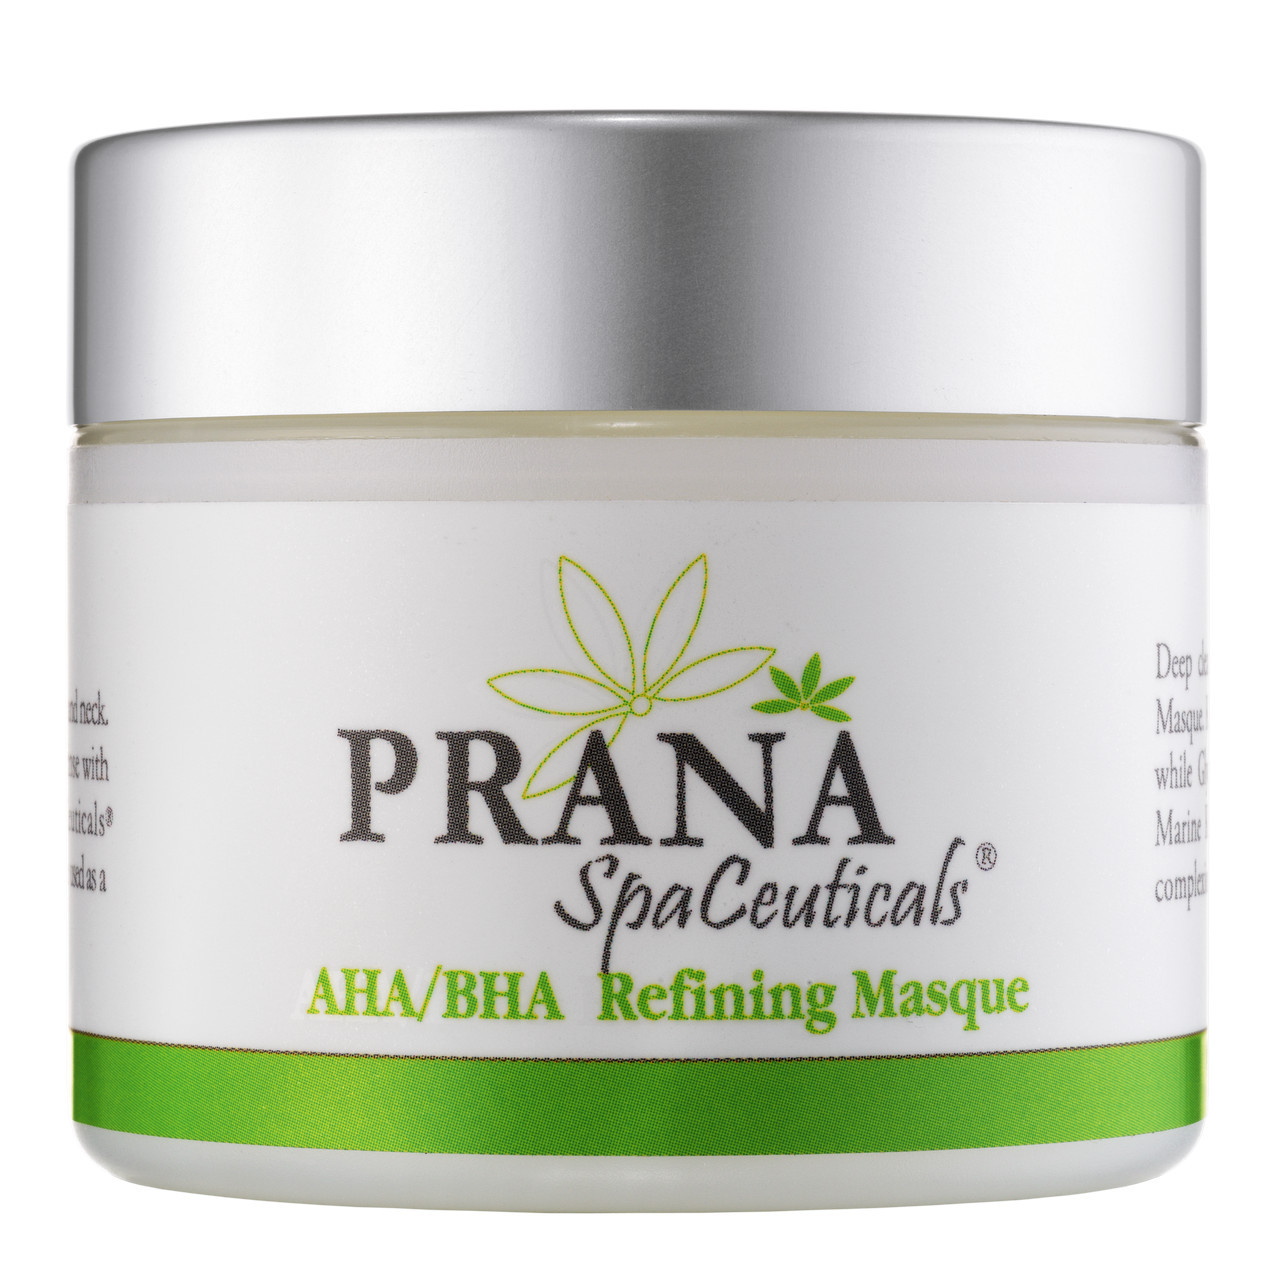 Prana SpaCeuticals AHA/BHA Refining Masque